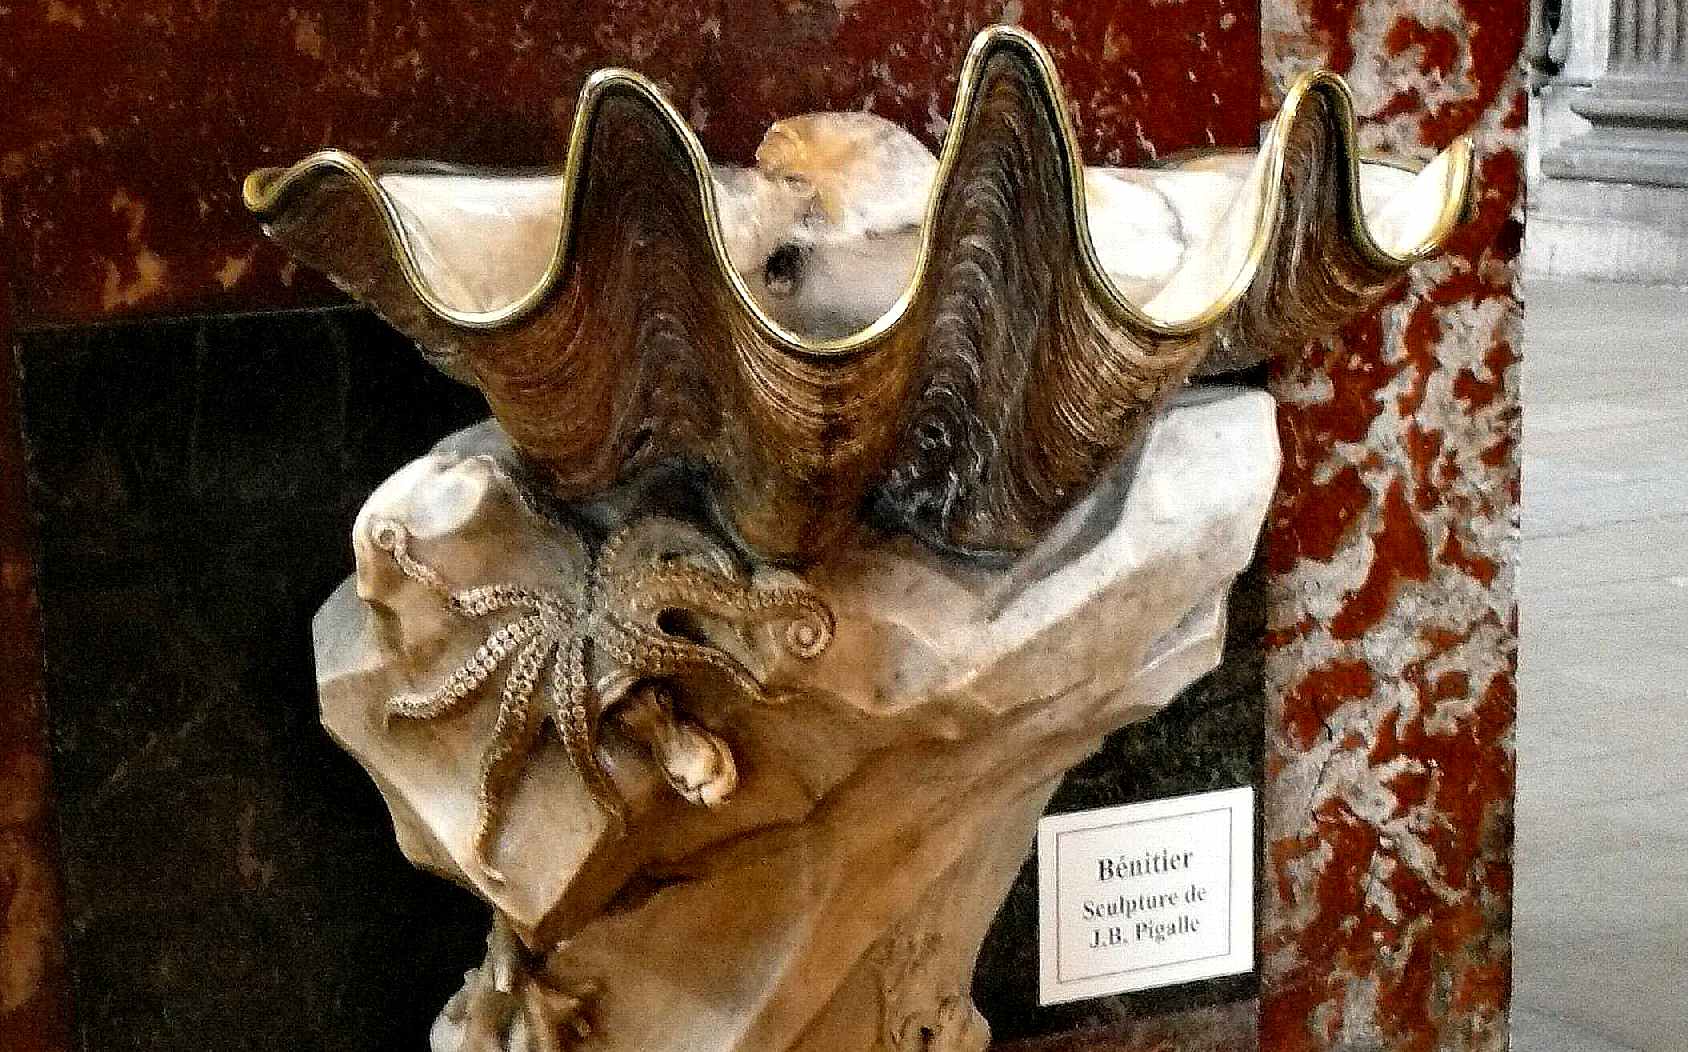 Jean Baptiste Pigalle sculpture clam